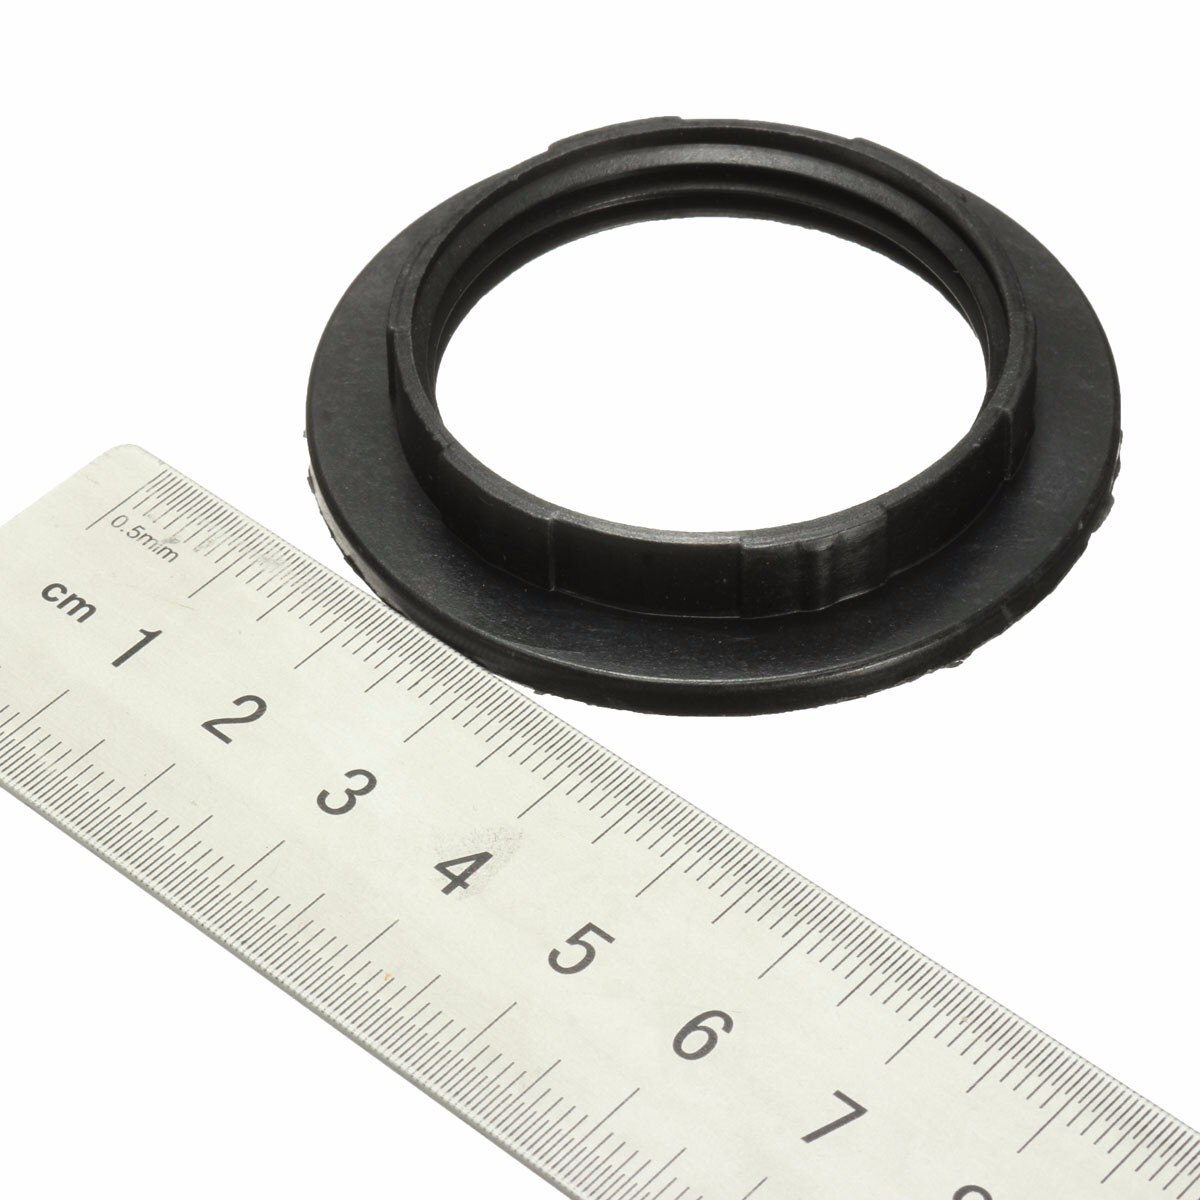 40mm/57mm E27 abat-jour anneau adaptateur noir/blanc abat-jour collier anneau adaptateur porte-ampoule abat-jour accessoire